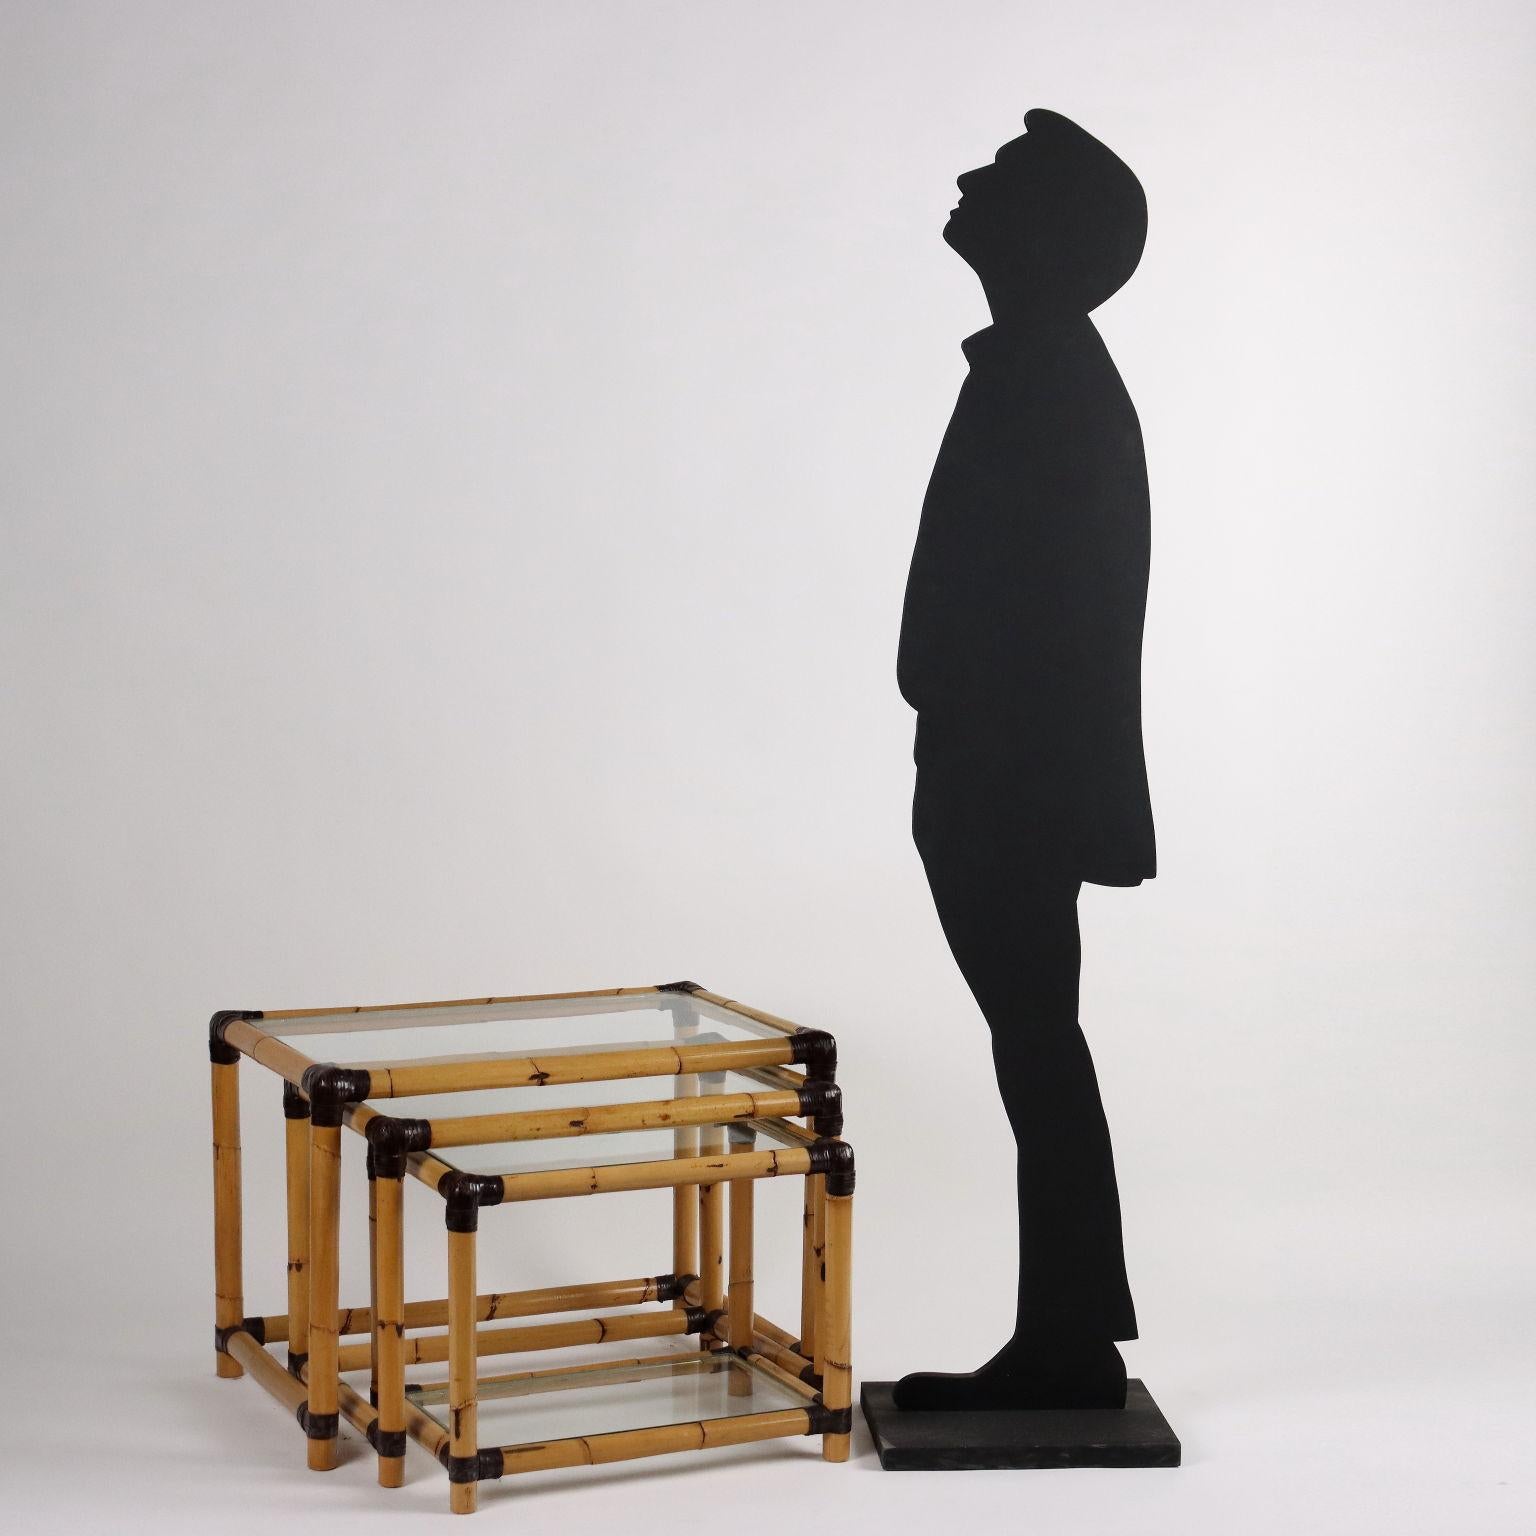 Trio of tables by Arch. Fabrizio Smania for Studio Smania Interni; bamboo wood, glass, brass.